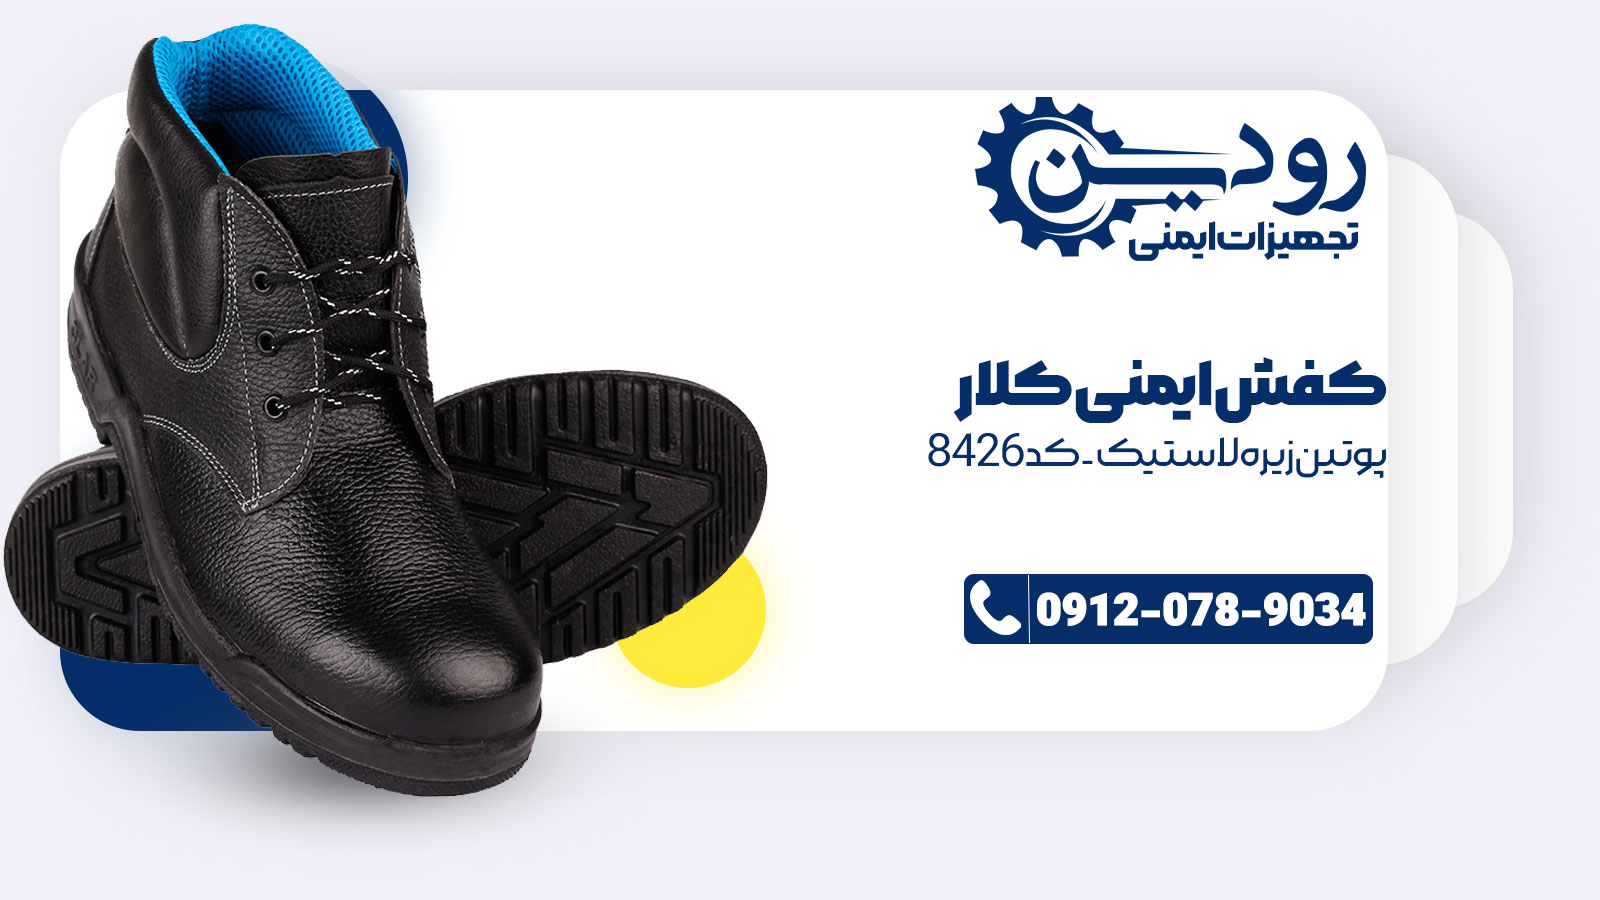 مرکز فروش کفش ایمنی کلار کواترو کد 7220 به شما انواع کفش کلار را ارائه میدهد.